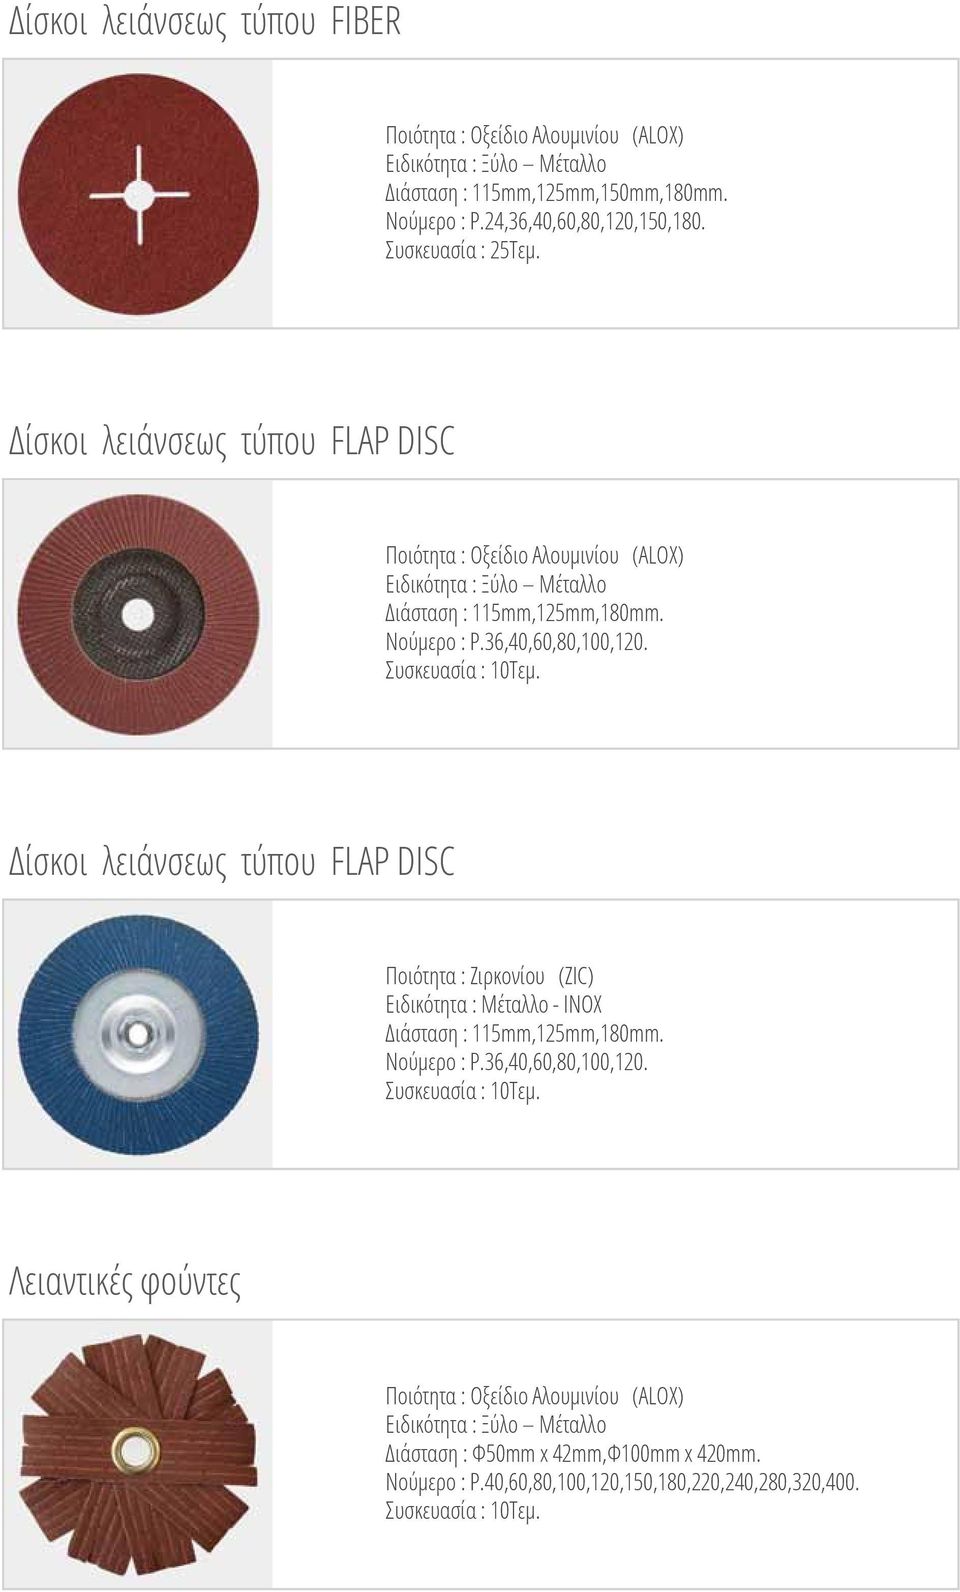 Συσκευασία : 10Τεμ. Δίσκοι λειάνσεως τύπου FLAP DISC Ποιότητα : Ζιρκονίου (ZIC) Ειδικότητα : Μέταλλο - INOX Διάσταση : 115mm,125mm,180mm. Νούμερο : P.36,40,60,80,100,120.